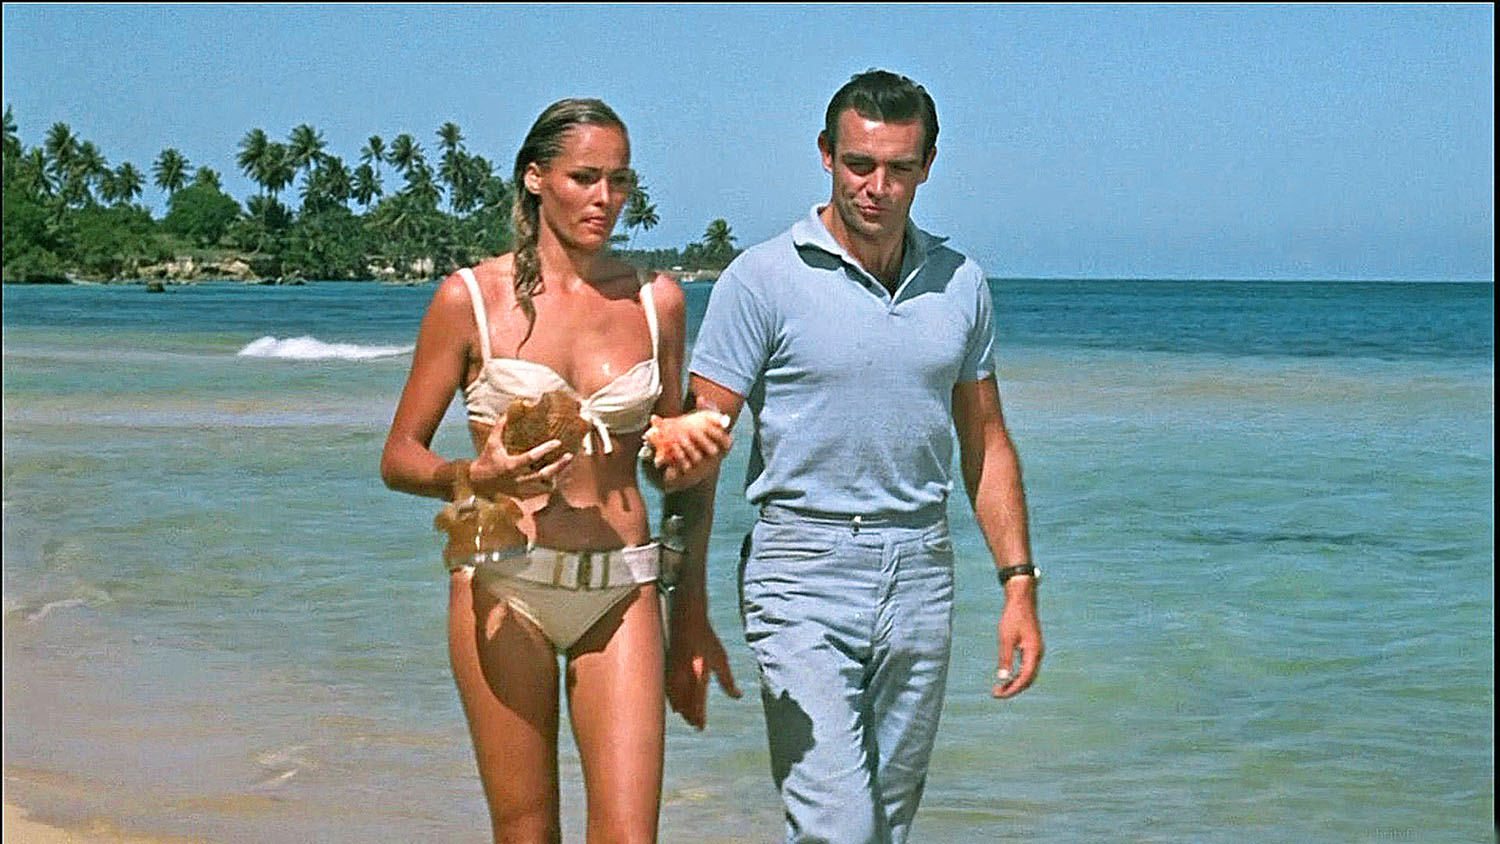 Ursula Adress az első Bond-lány és Sean Connery az első 007-es